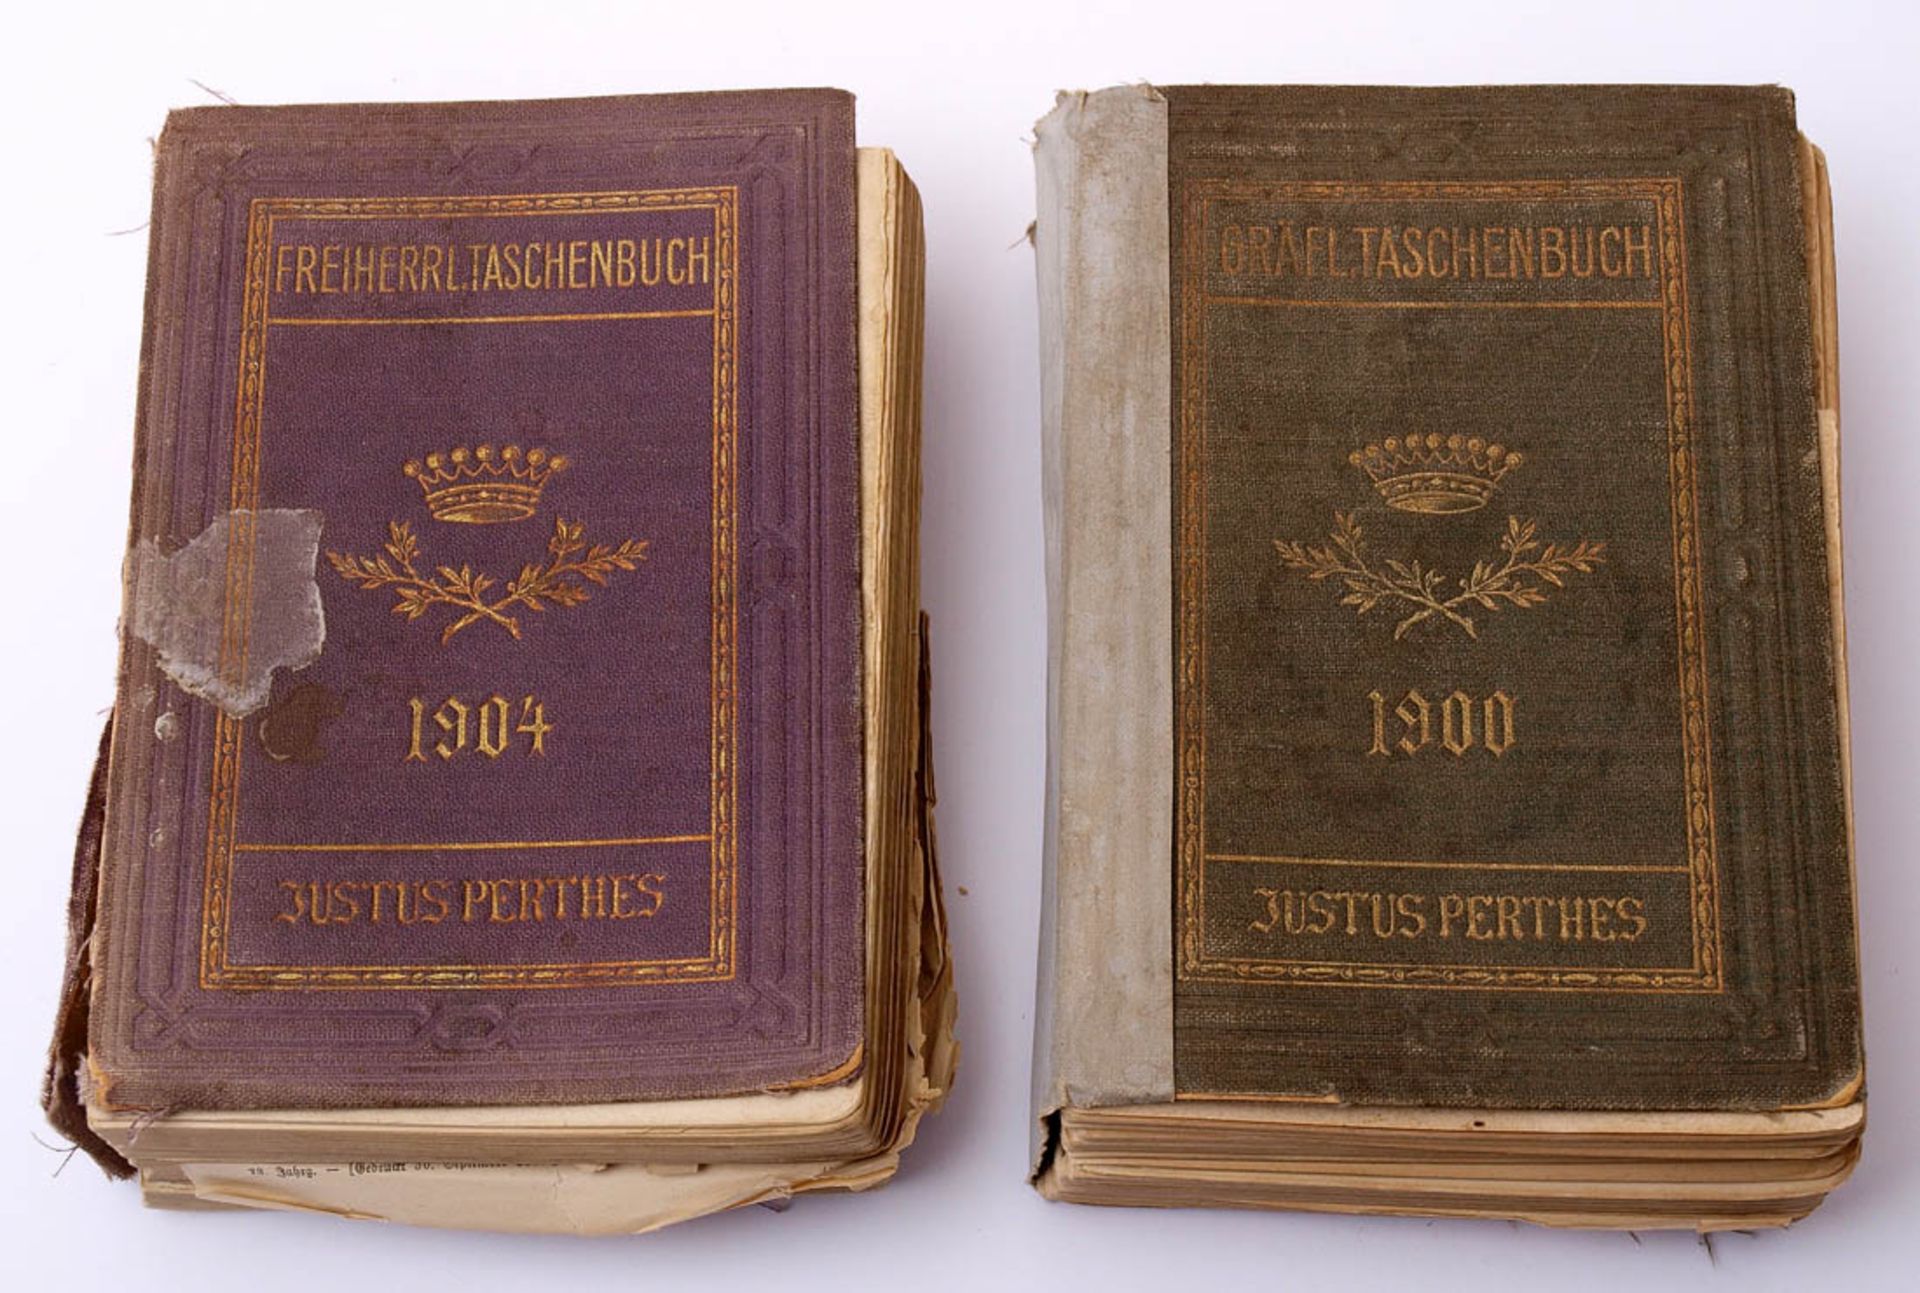 Gothaisches genealogisches Taschenbuch 2 Bde. (gräfliche Familien 1900 bzw. freiherrliche Familien